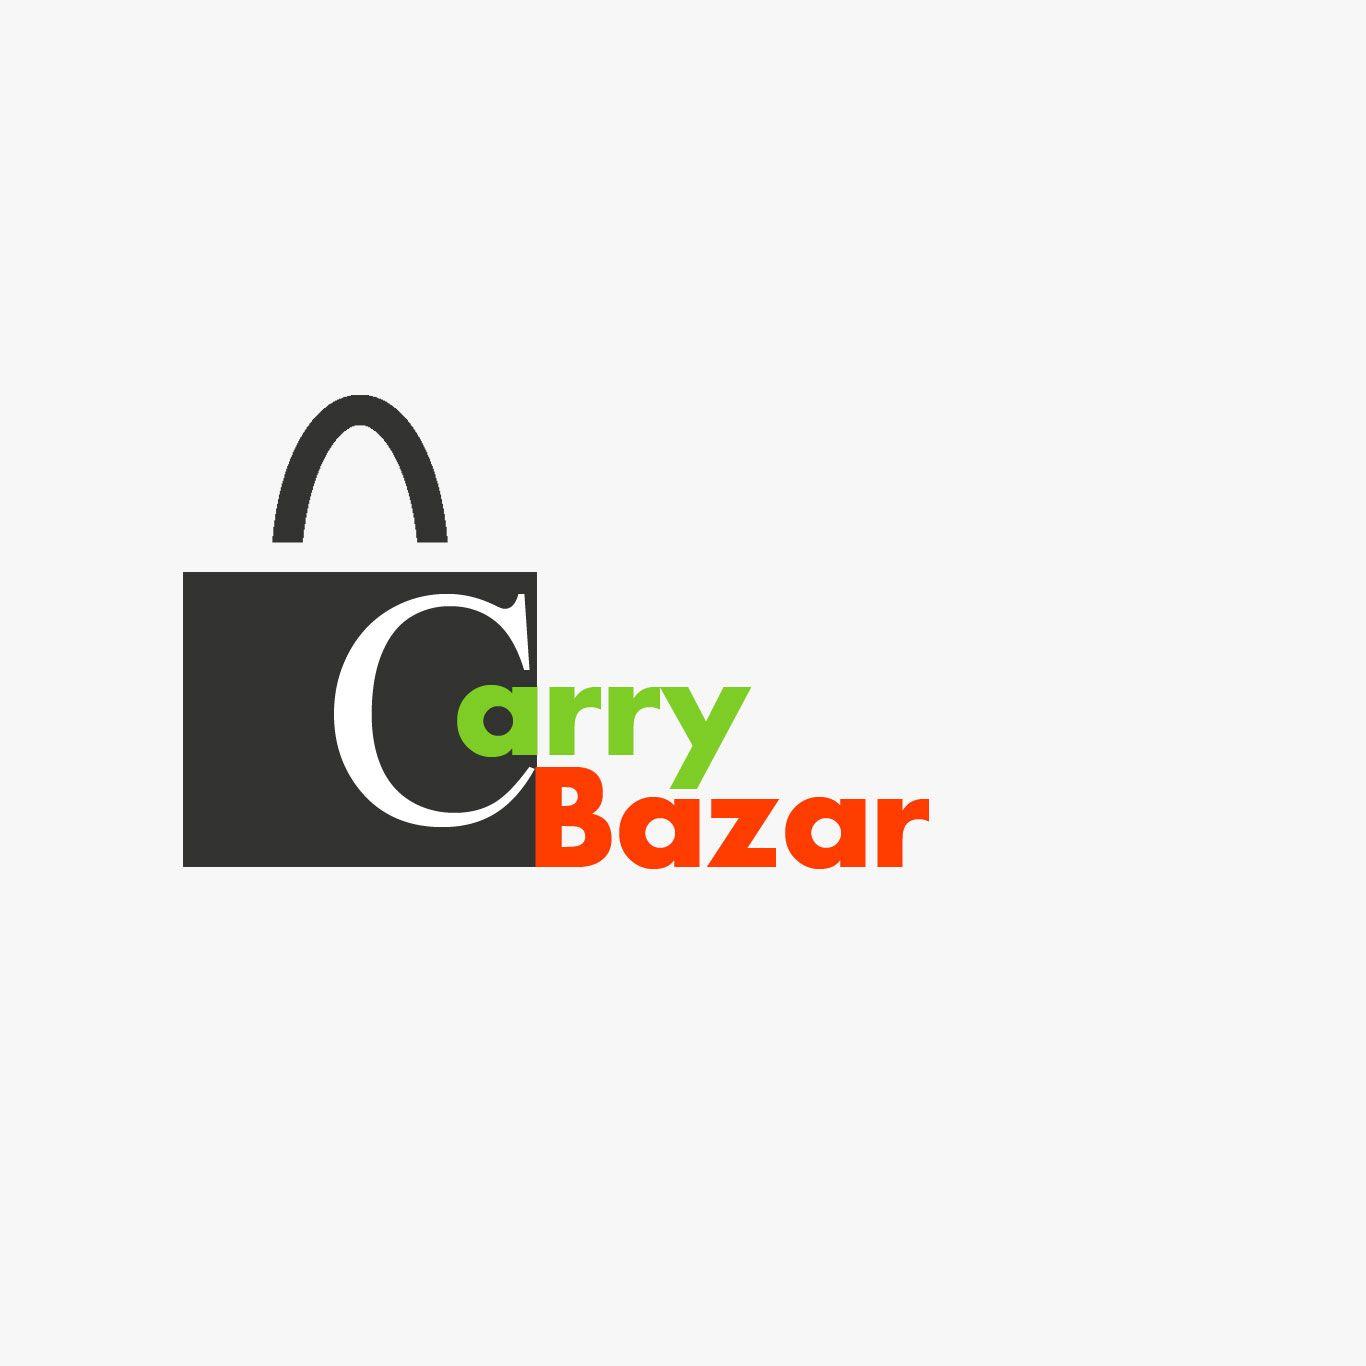 Bazar Logo - Carry Bazar Logo version2